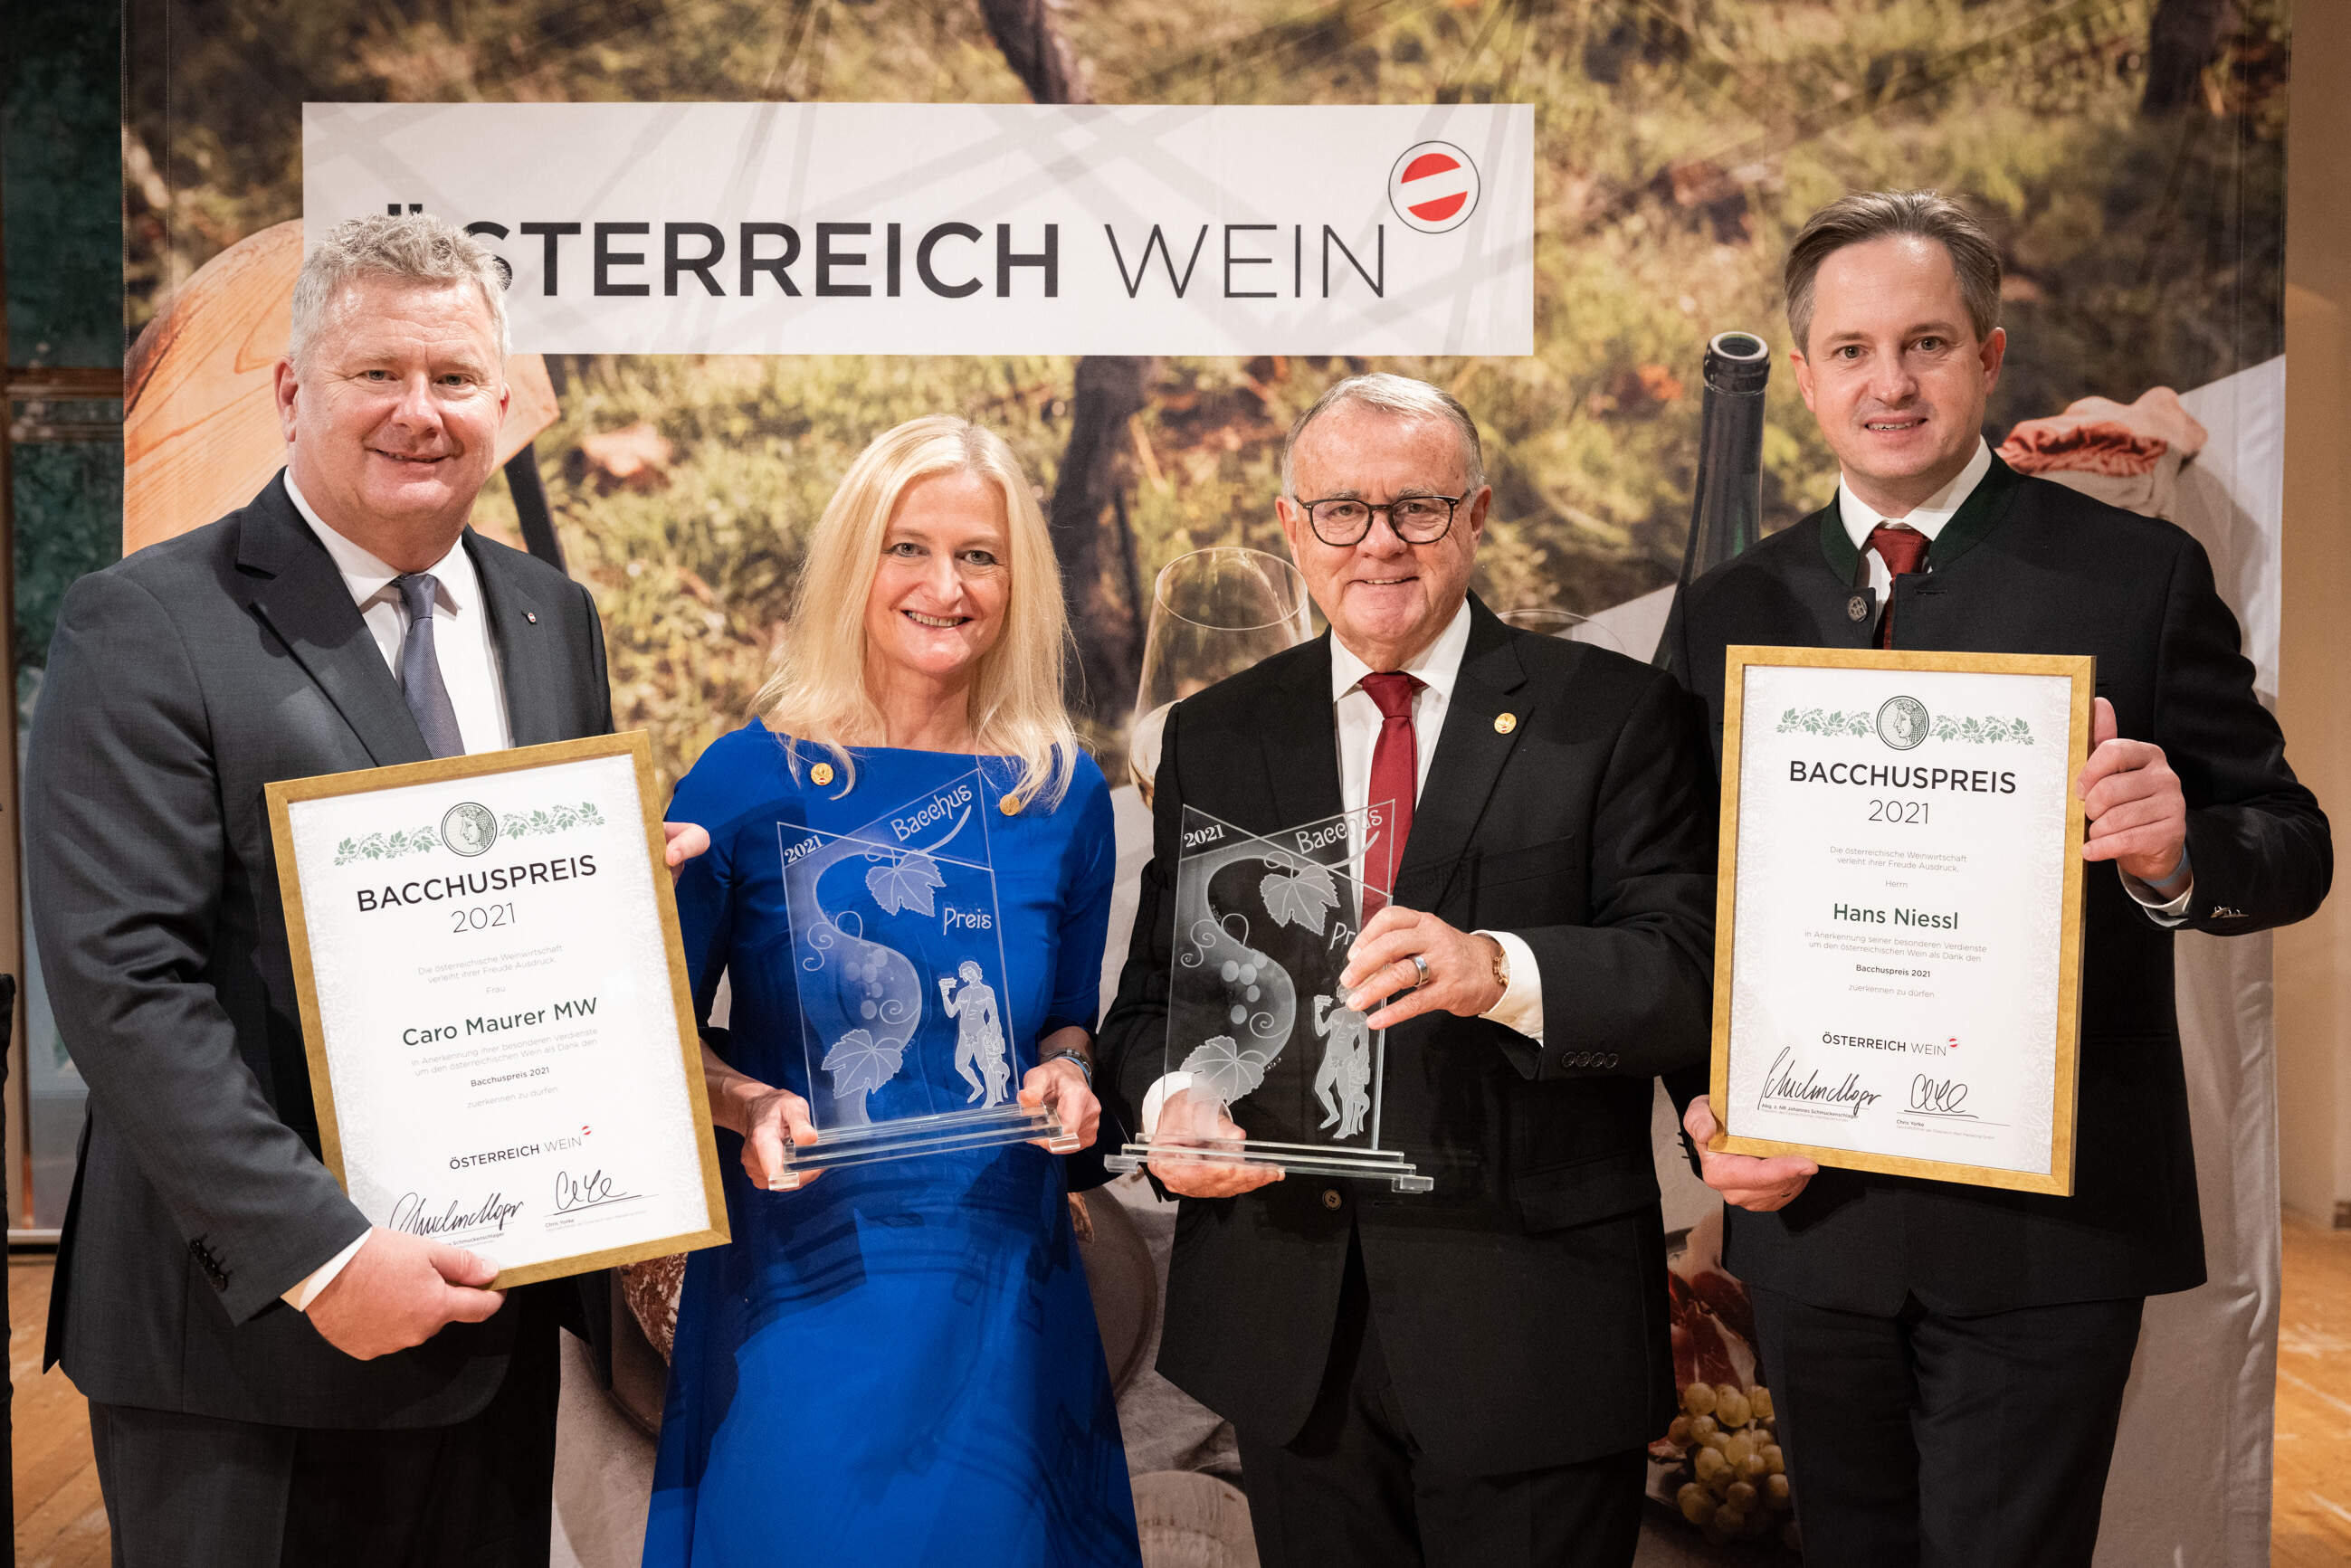 Weintaufe & Verleihung Bacchuspreis 2021